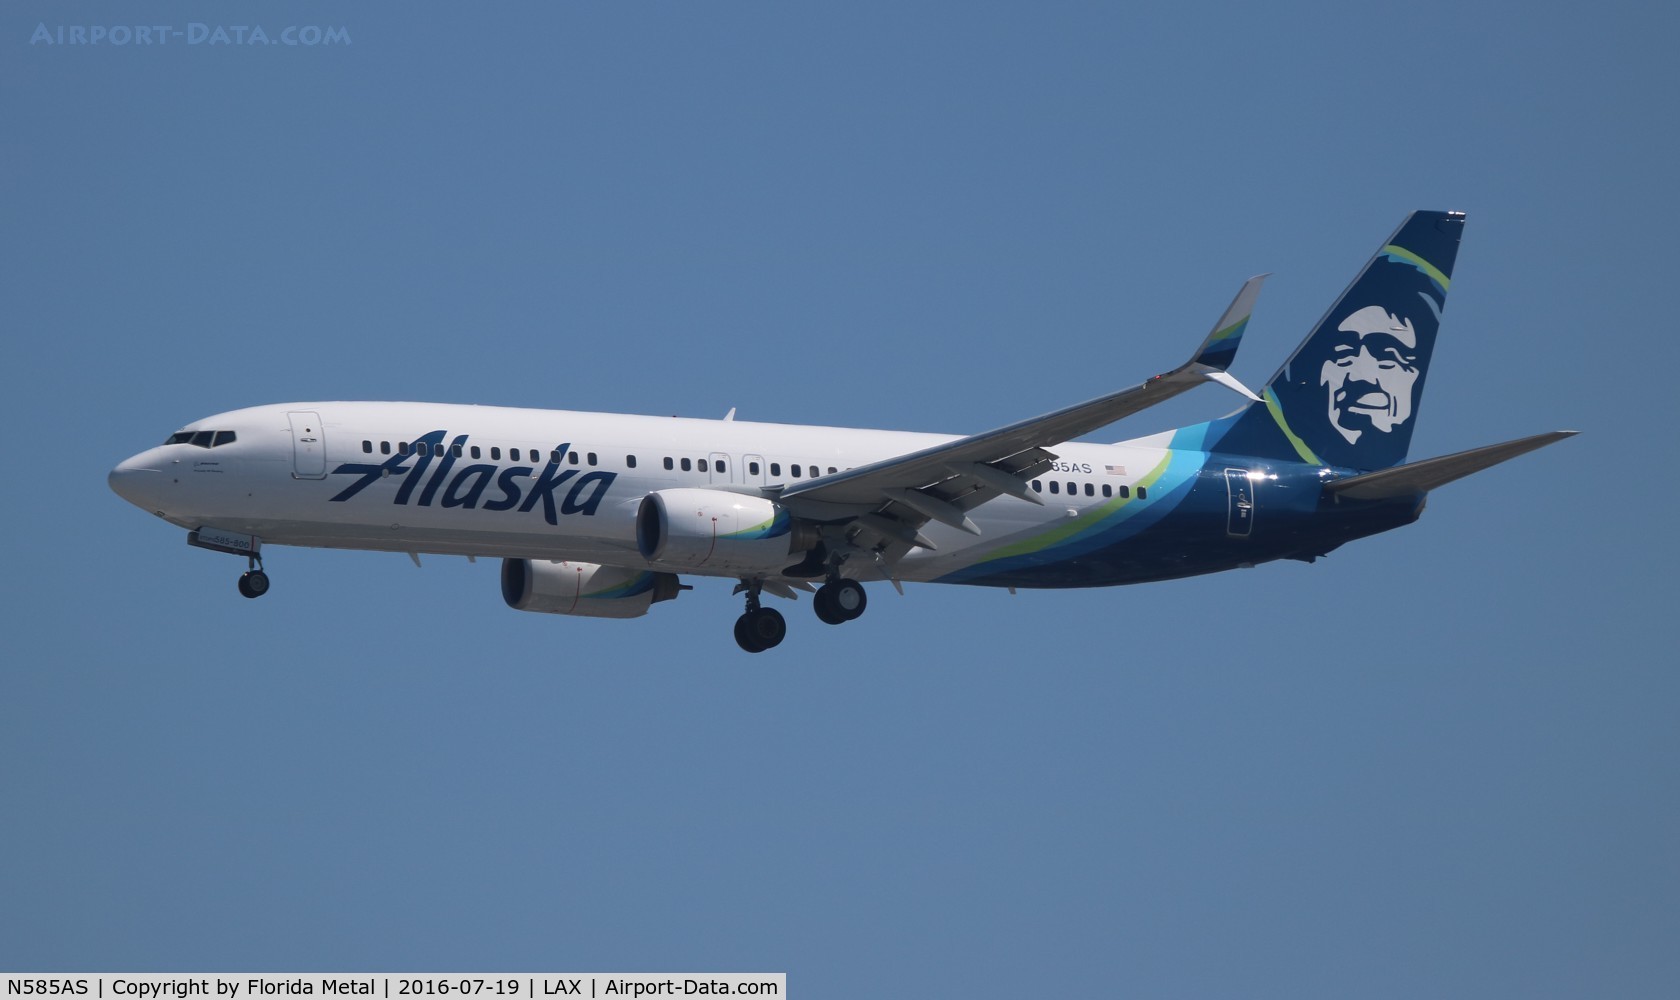 N585AS, 2007 Boeing 737-890 C/N 35683, Alaska